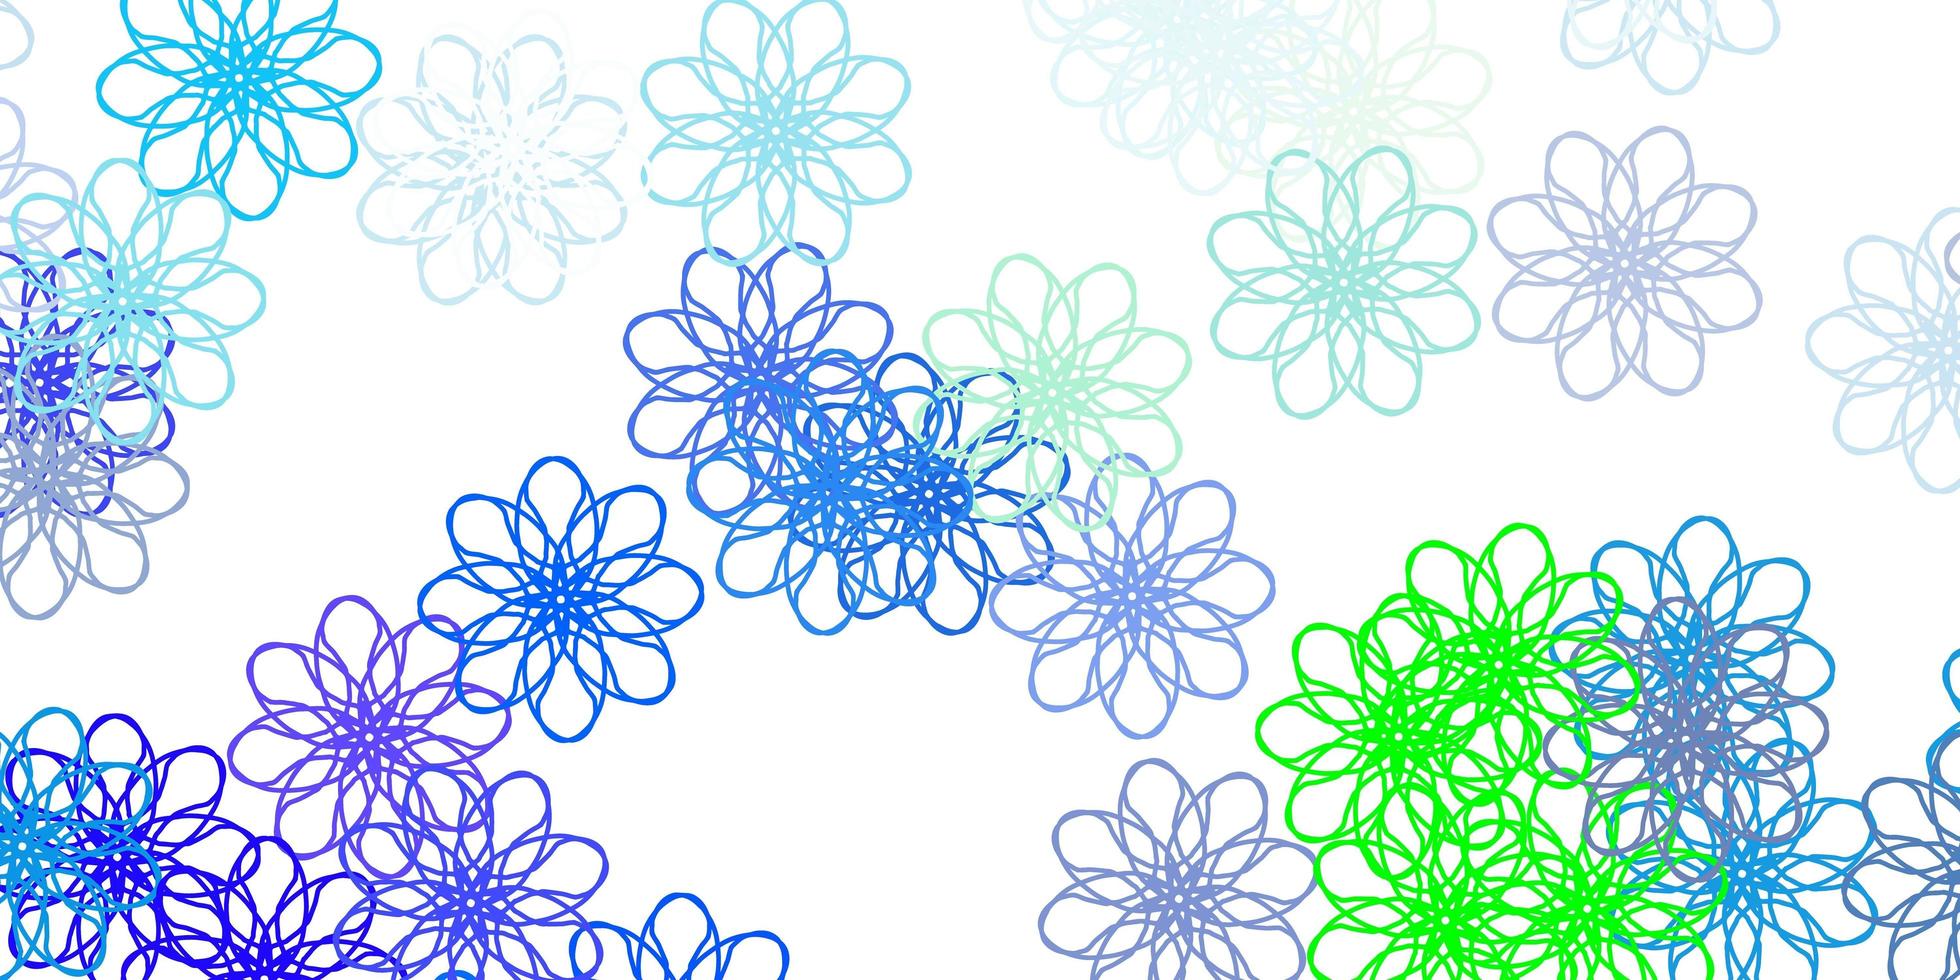 oeuvre naturelle de vecteur bleu clair, vert avec des fleurs.